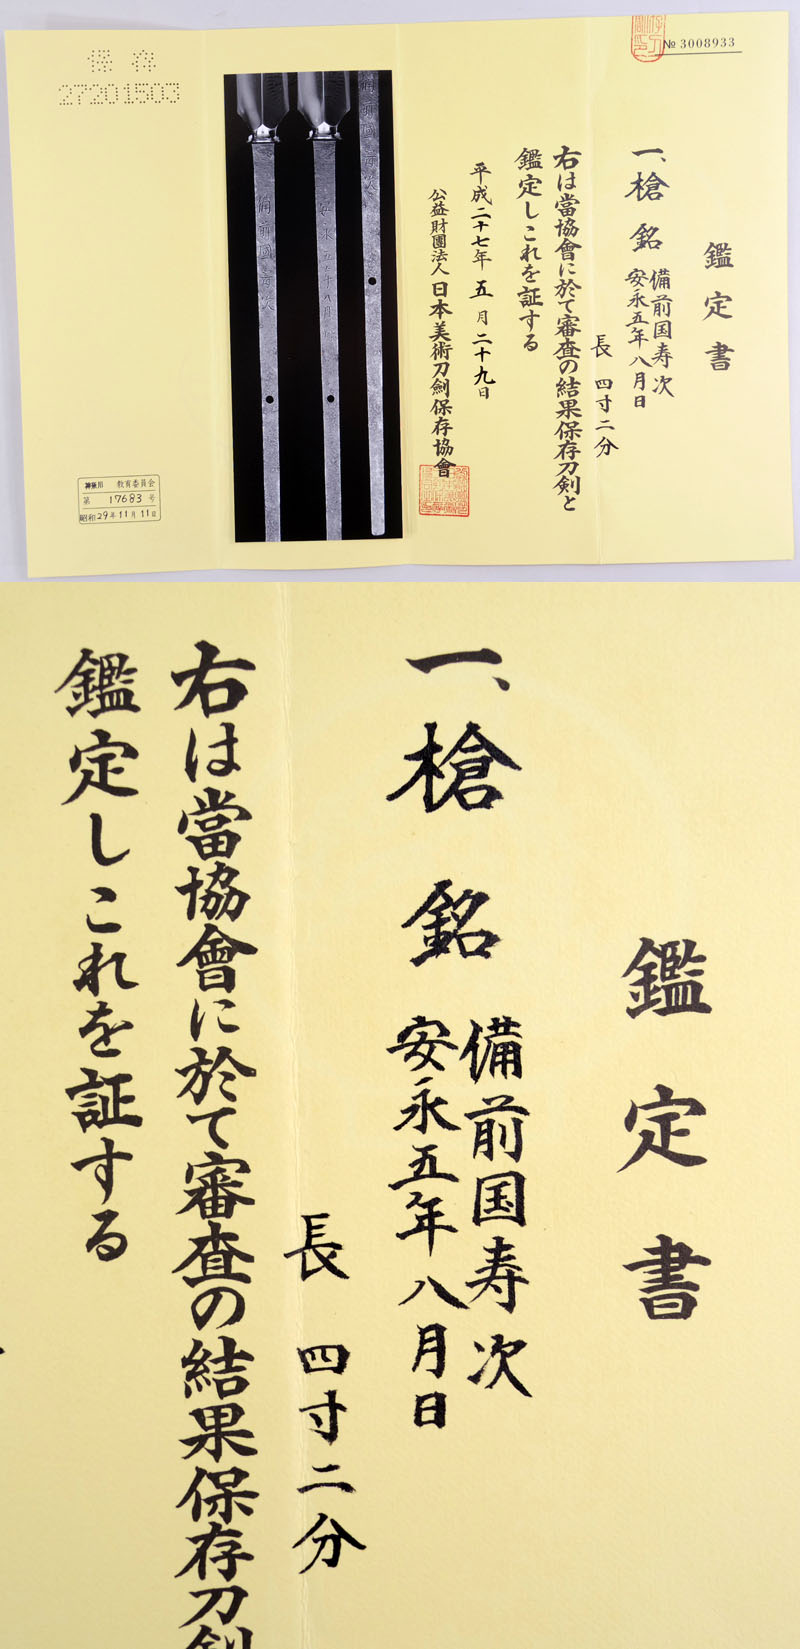 備前国寿次 (横山源八郎寿次) Picture of Certificate